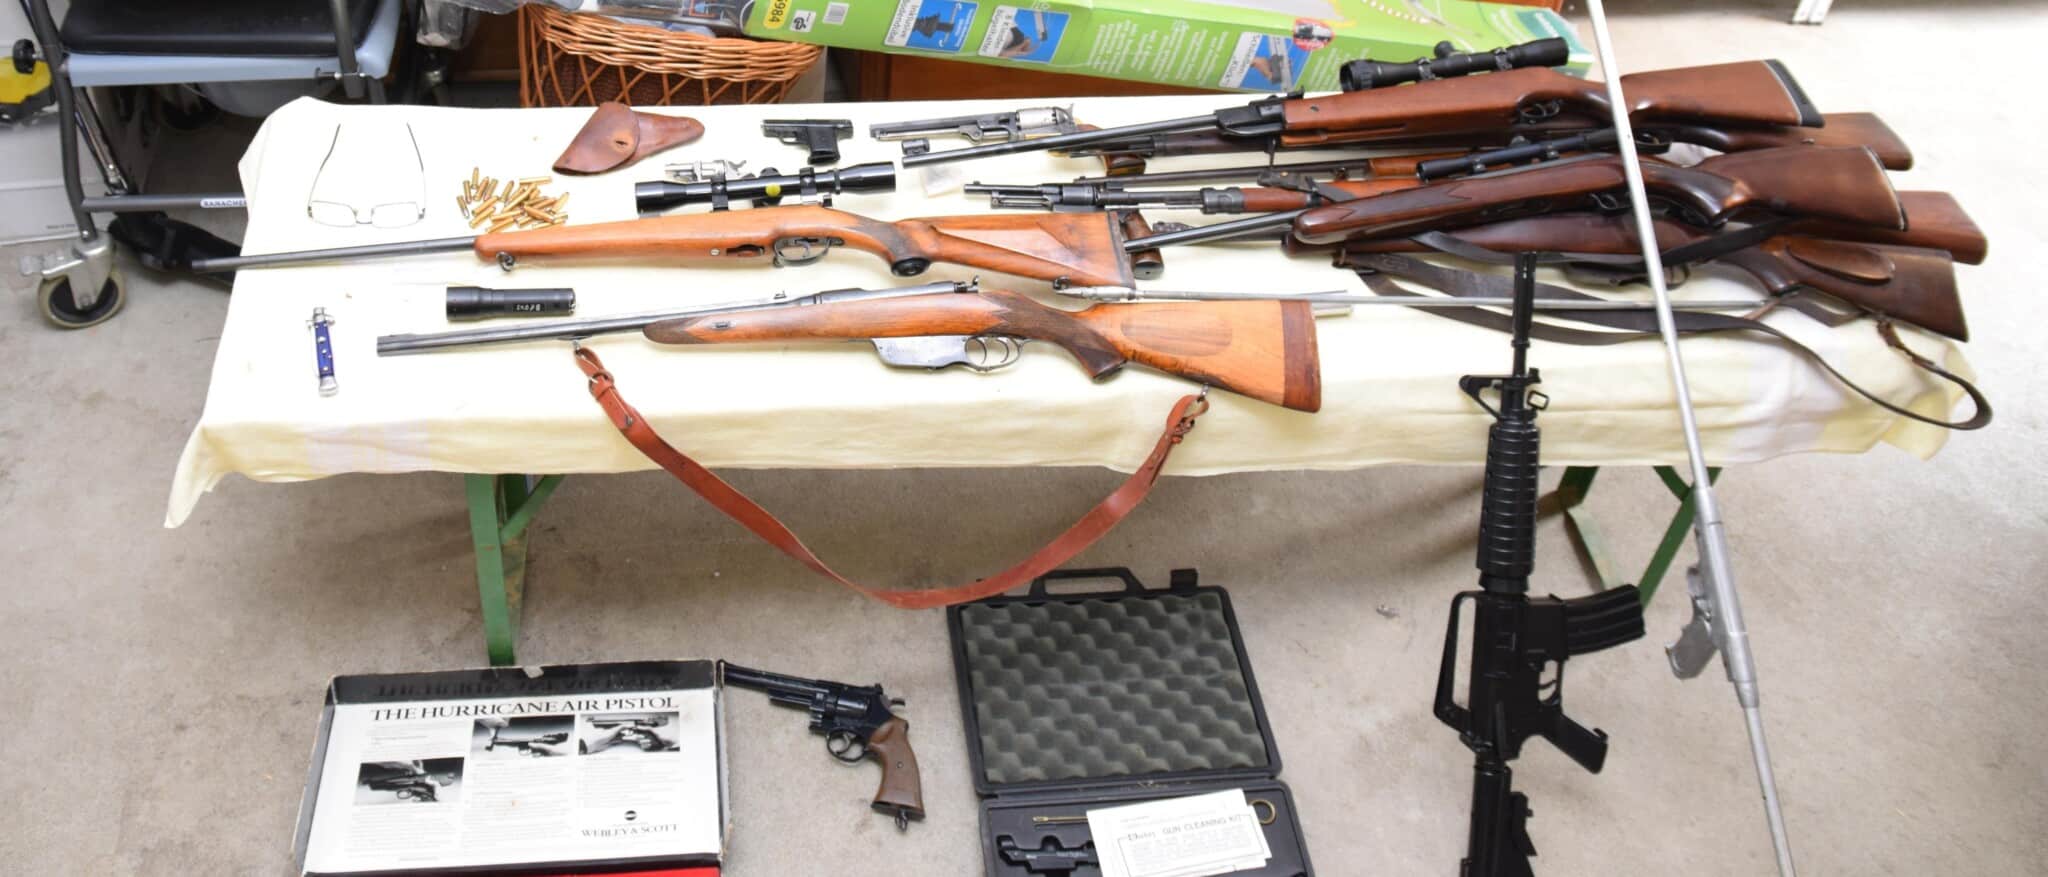 Zahlreiche illegal besessene Faustfeuerwaffen, Langwaffen mit Zubehör und Kriegsmaterial konnten bei dem Kärntner sichergestellt werden.